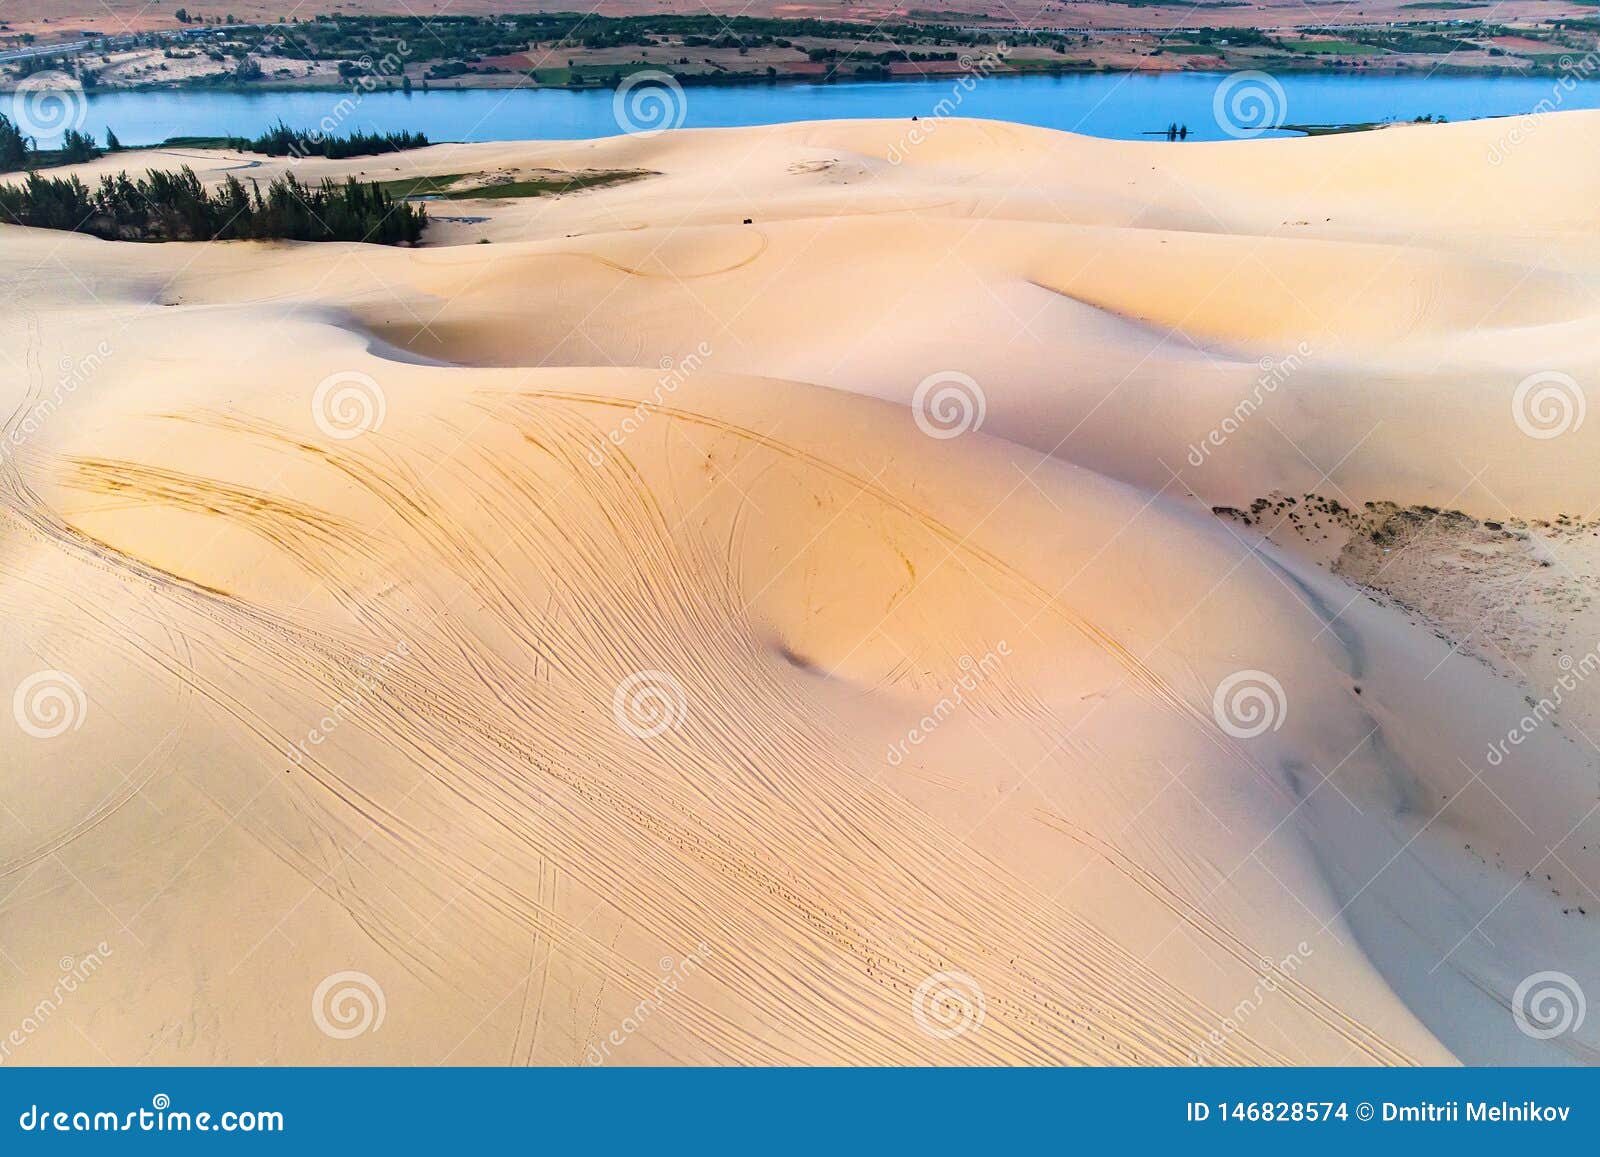 Thưởng thức hình ảnh về Cát Mũi Nẹp - những đội cát mịn màng và đầy màu sắc. Bức ảnh sẽ khiến bạn nghĩ ngay đến những chuyến đi ngắm cảnh đầy phiêu lưu và hứng khởi.